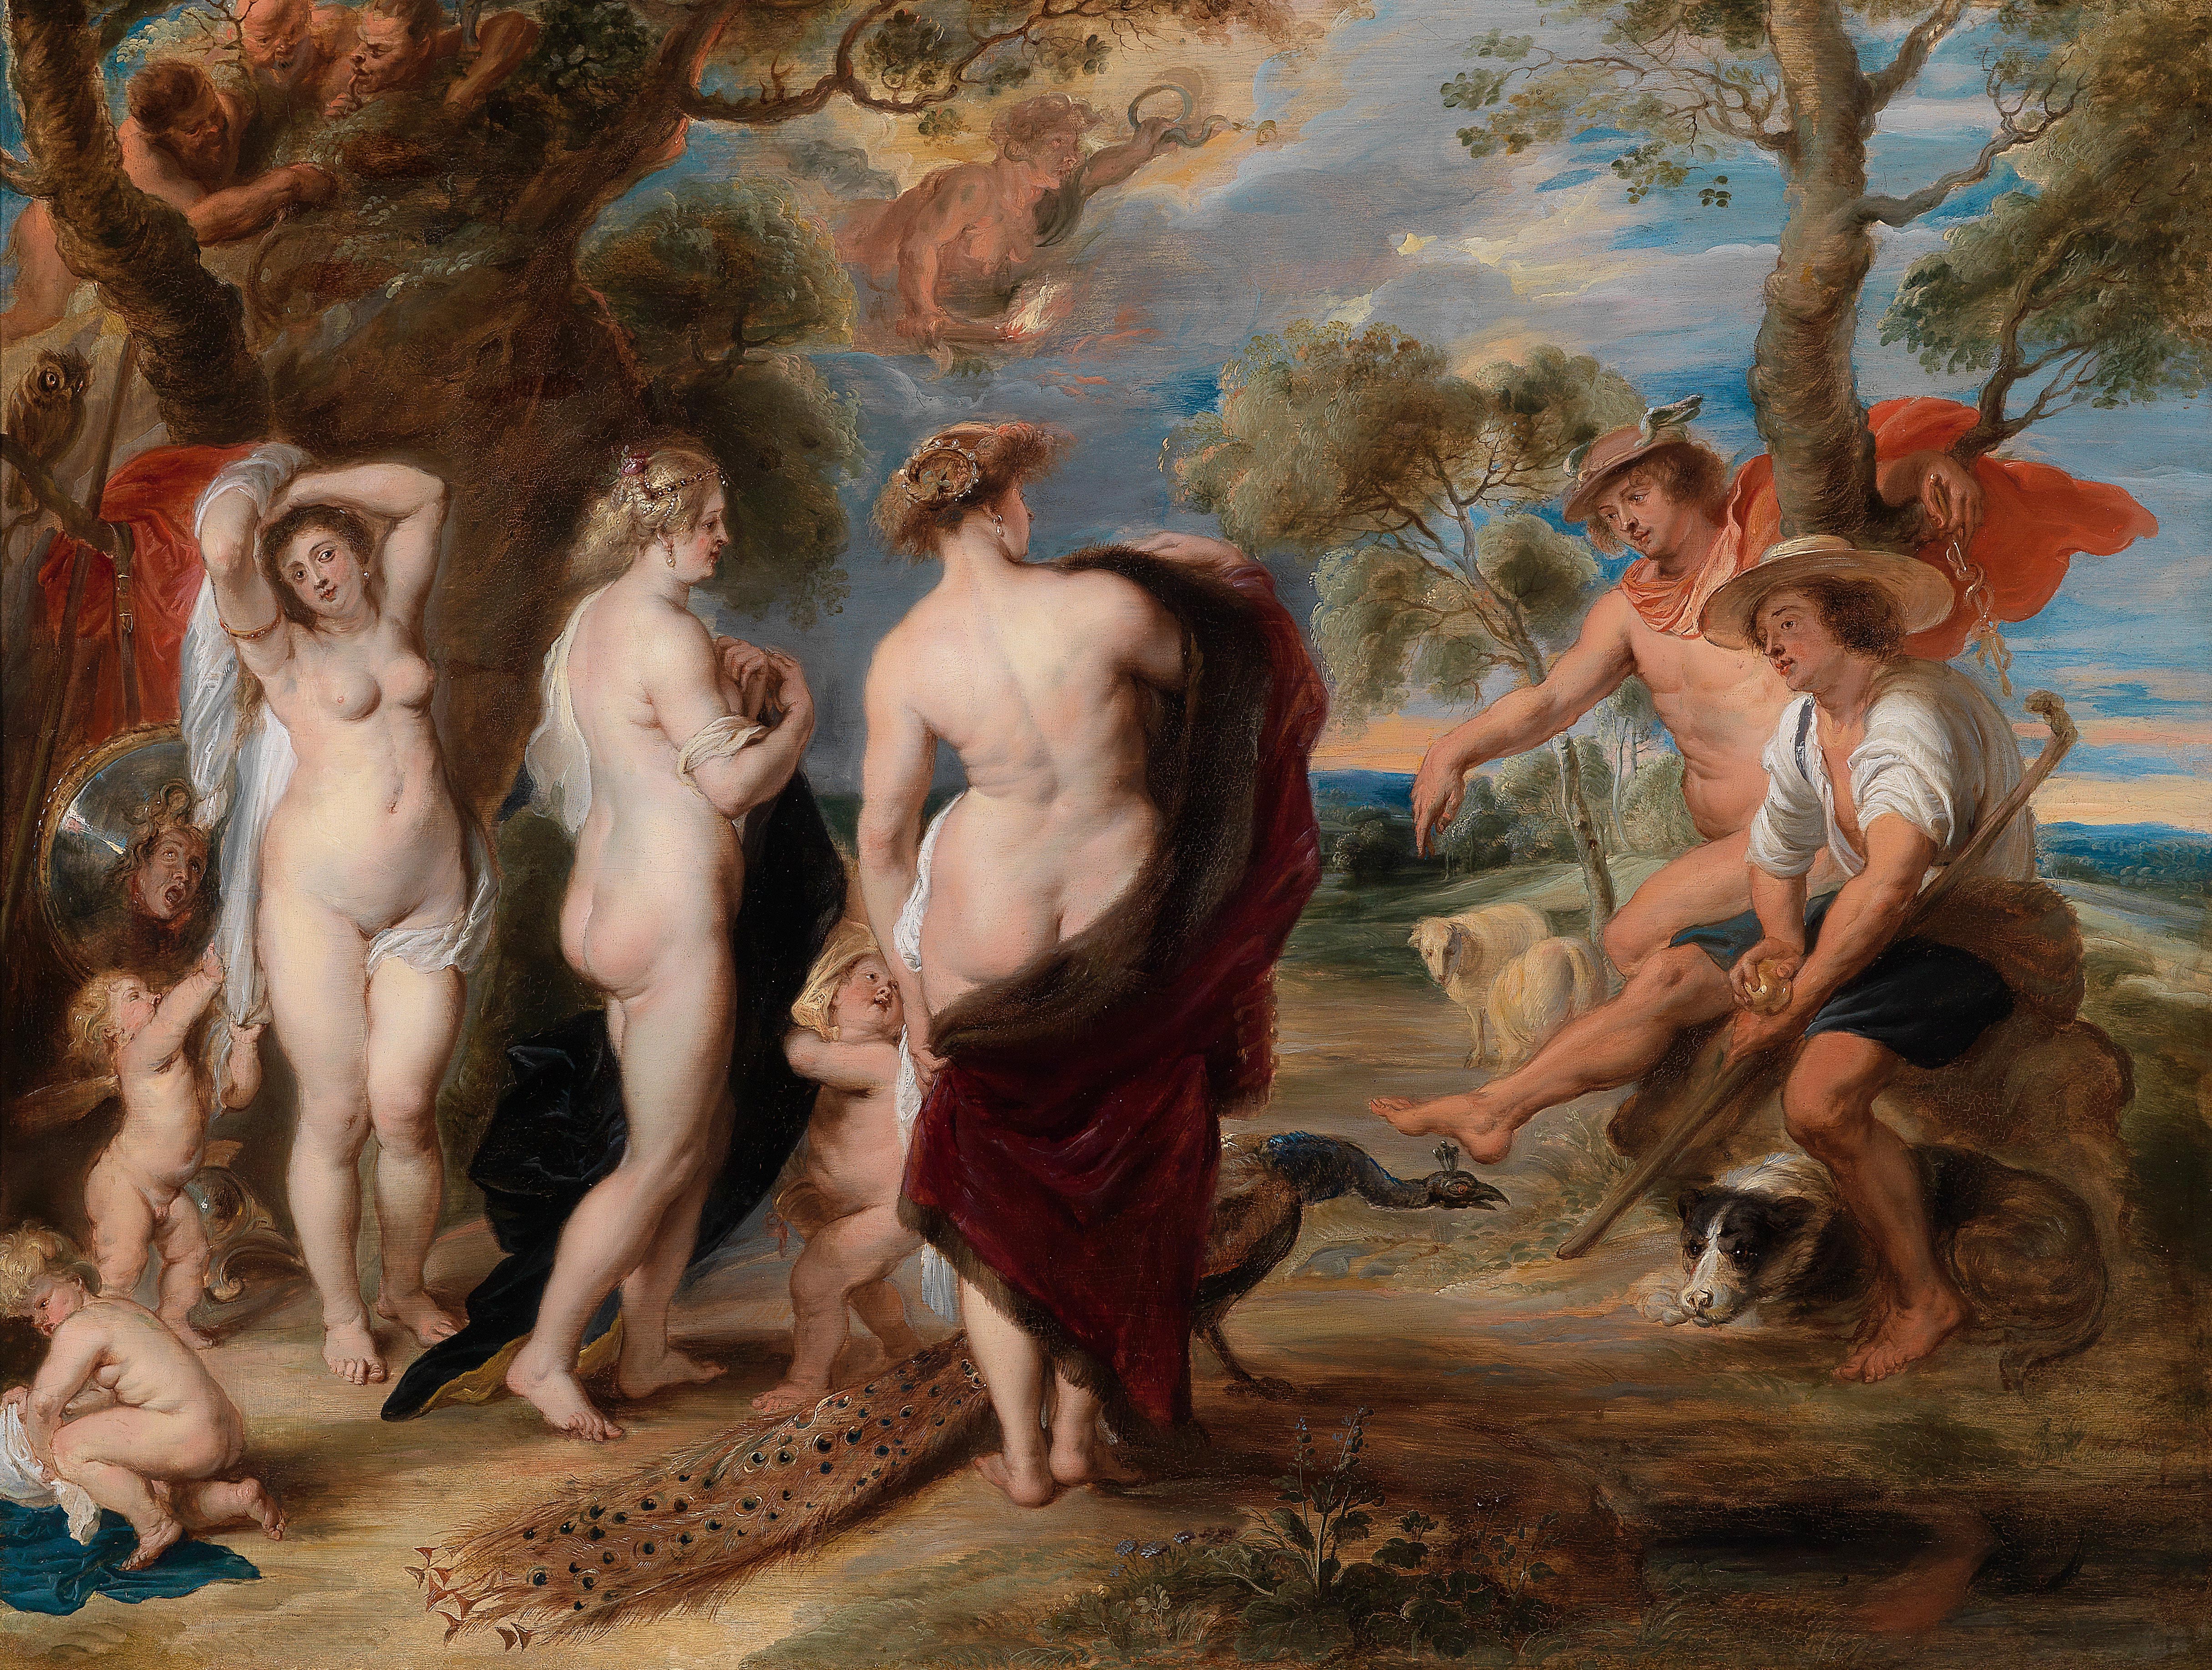 Суд Париса by Peter Paul Rubens - 1636 - 145 x 194 см 